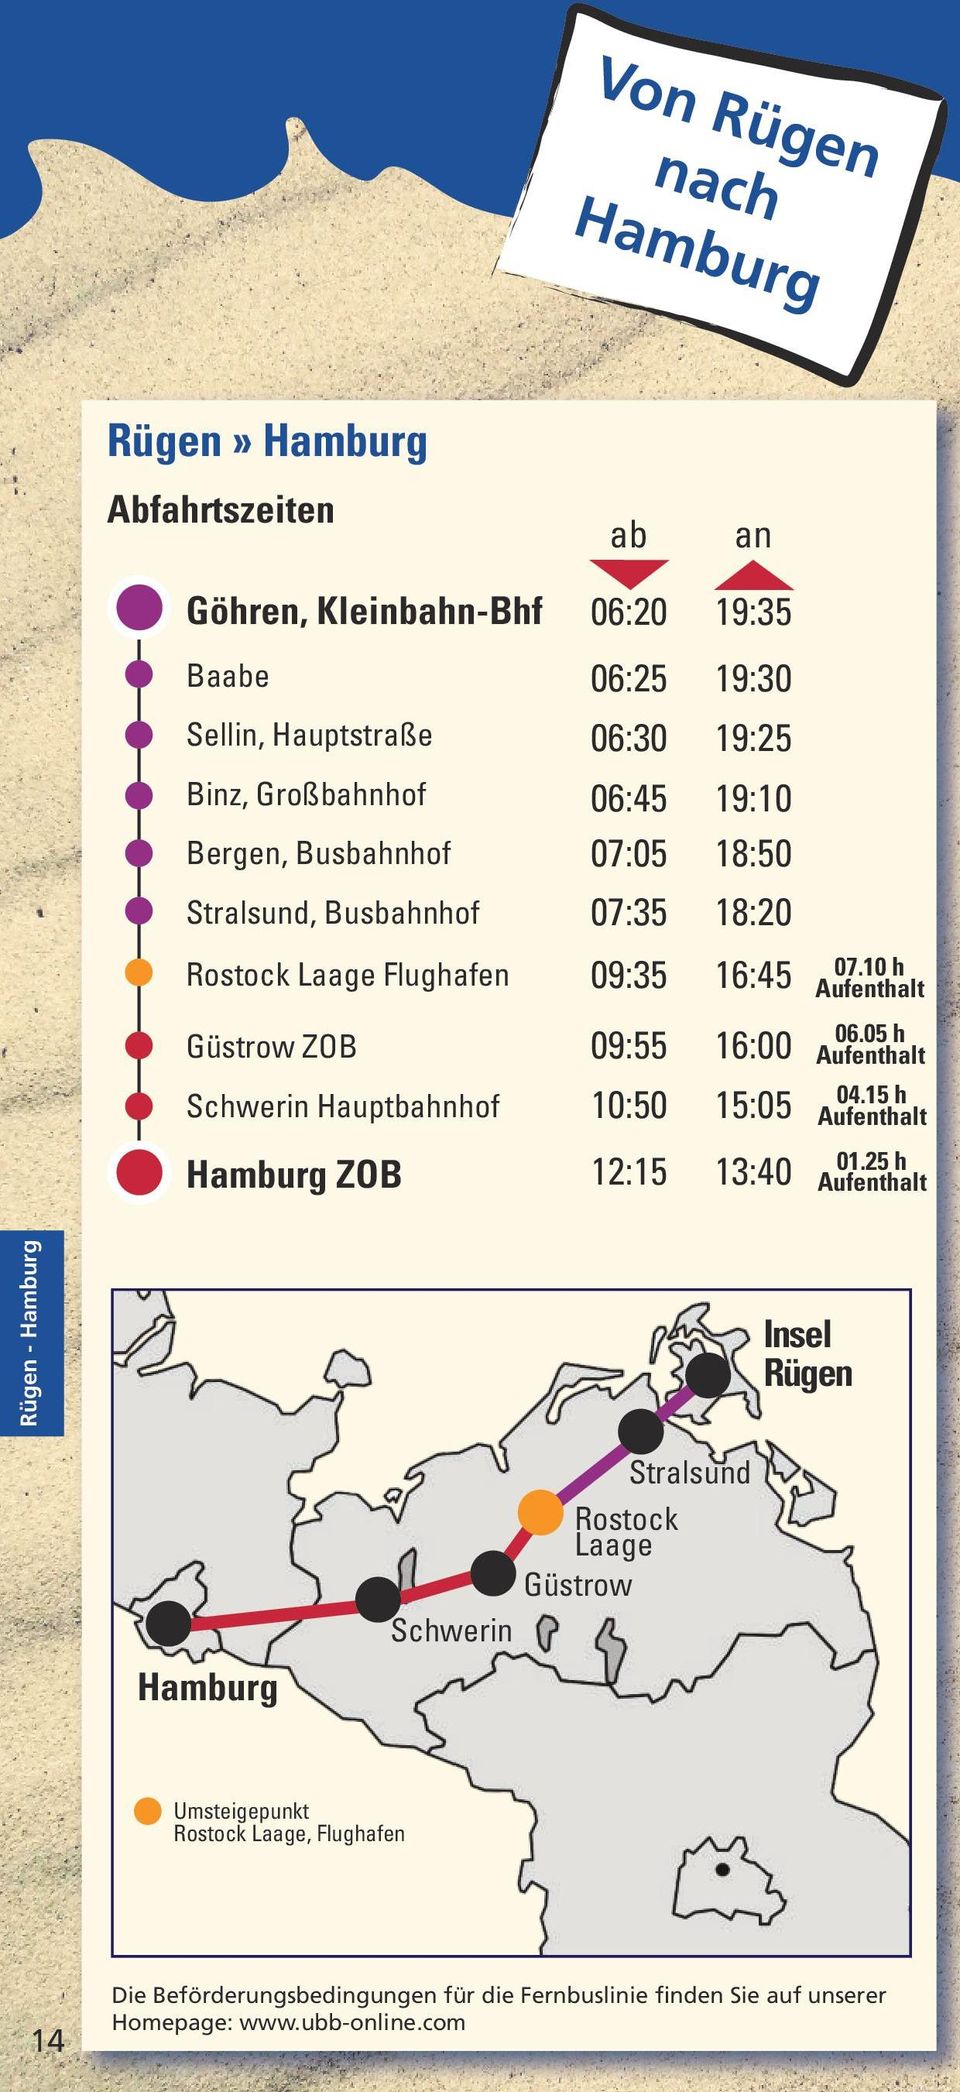 10 h Güstrow ZOB 09:55 16:00 06.05 h Schwerin Hauptbahnhof 10:50 15:05 04.15 h Hamburg ZOB 12:15 13:40 01.